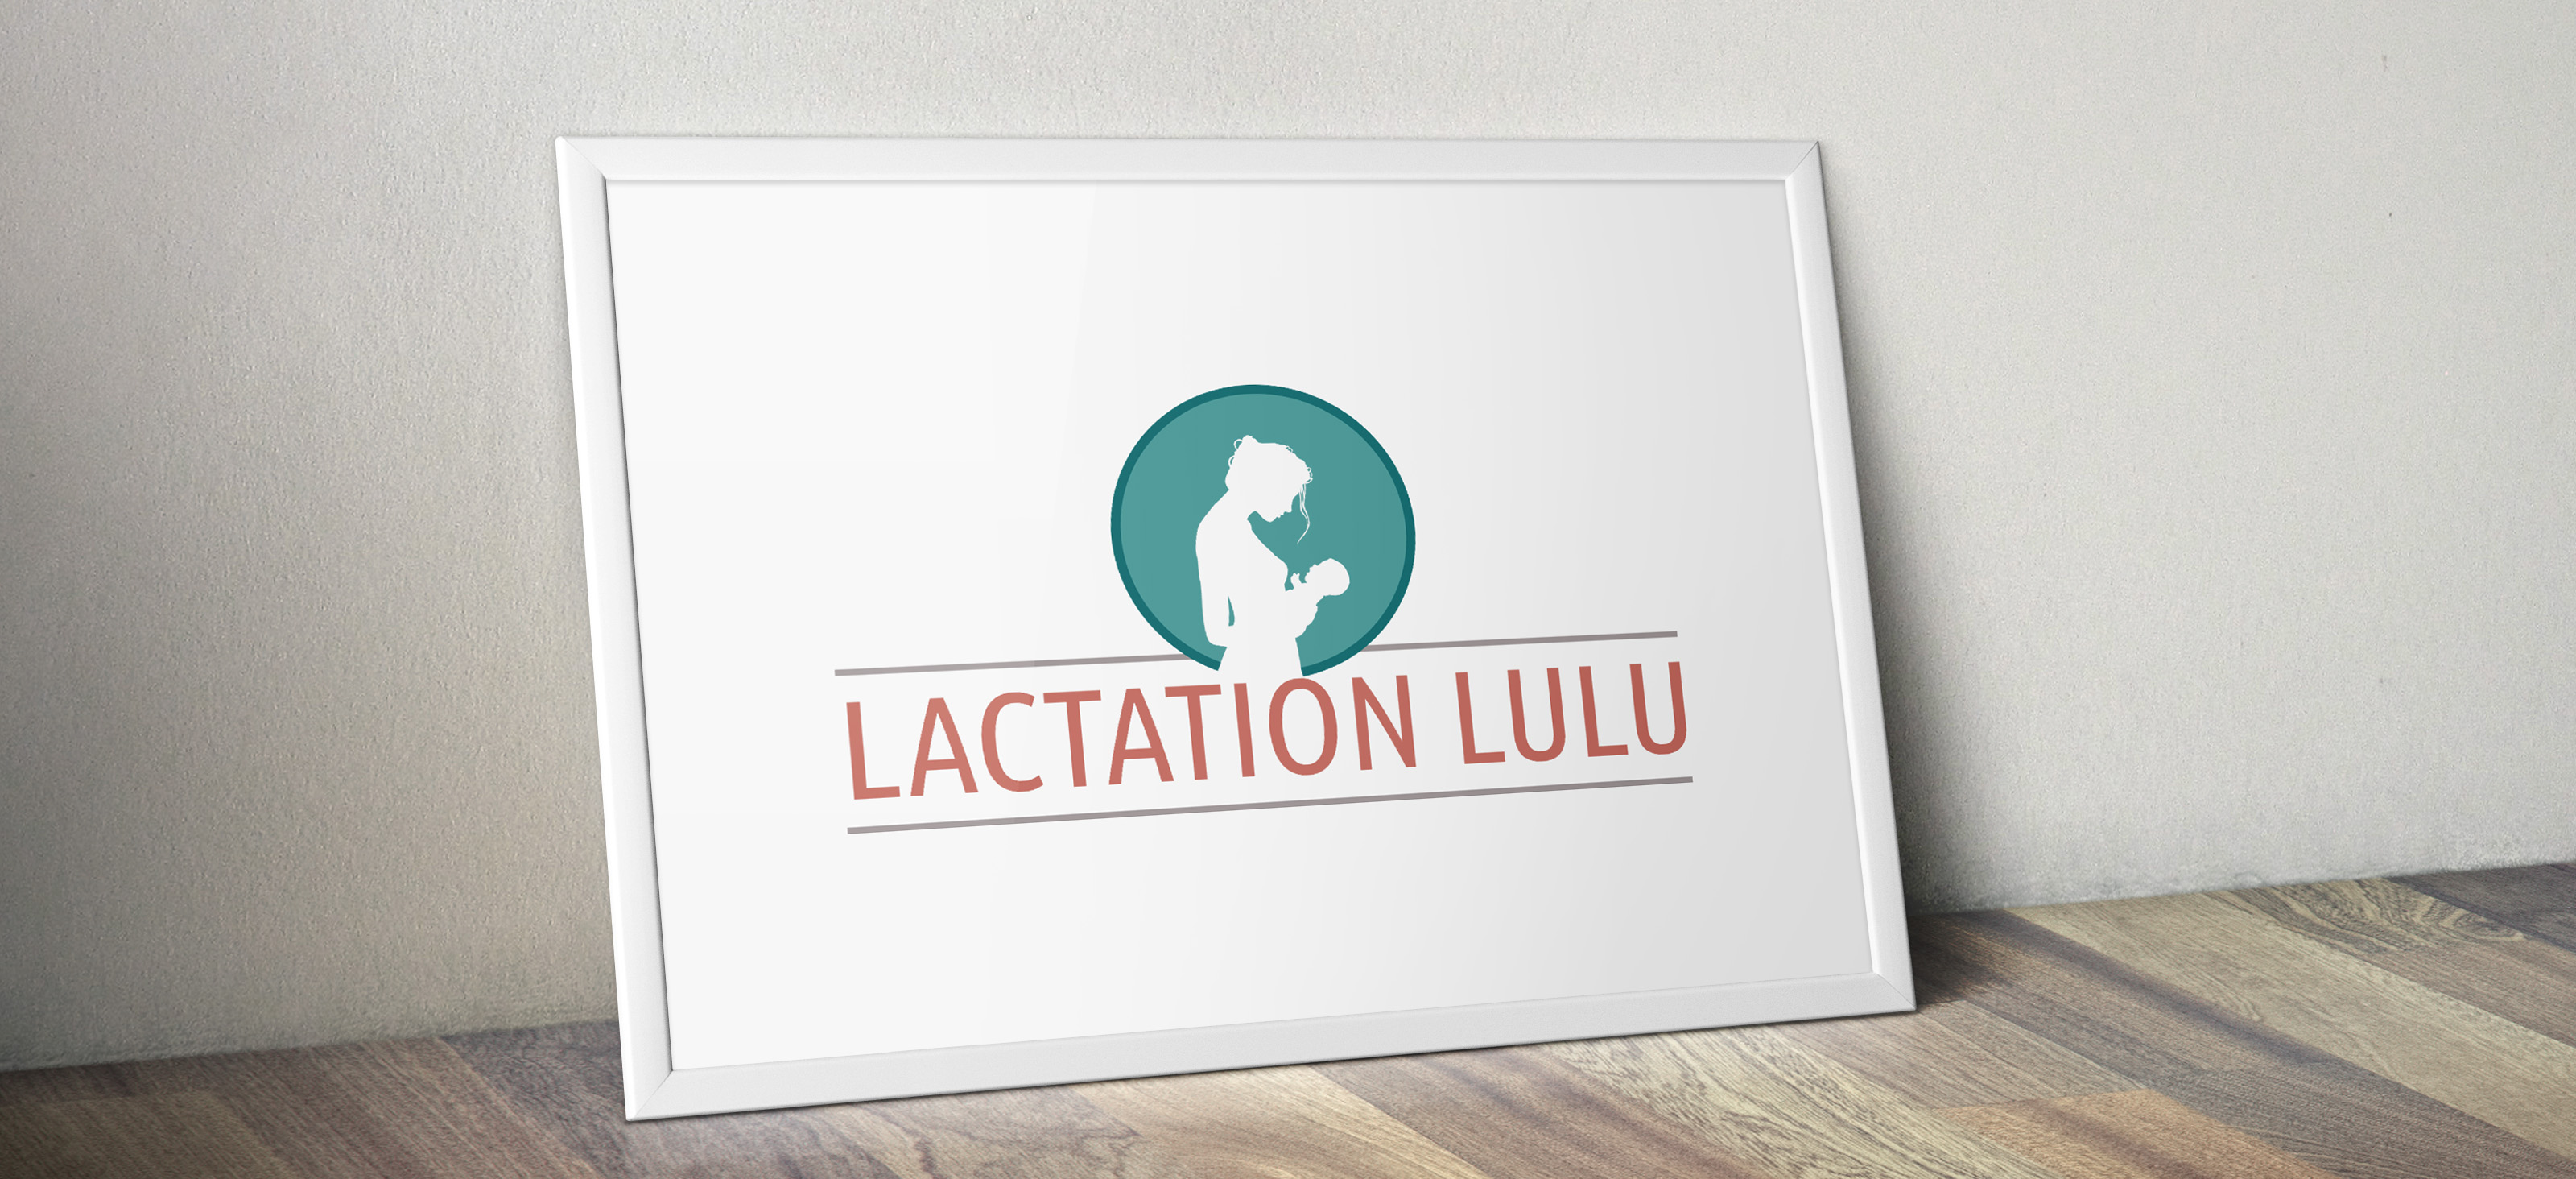 Lactation LuLu Logo